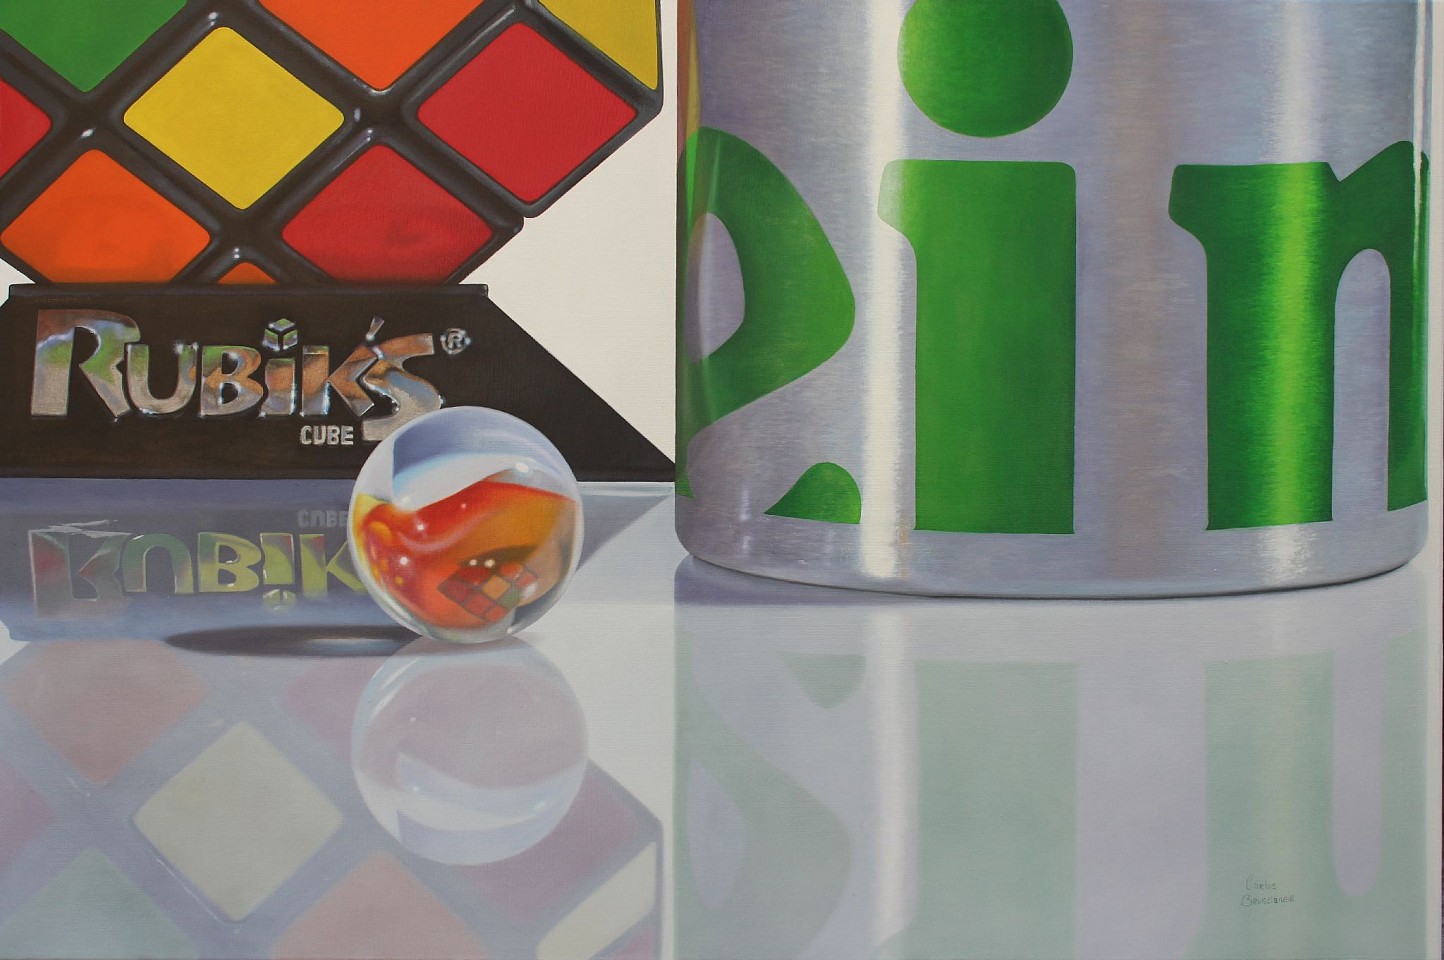 Carlos Bruscianelli, Rubik, 2018
oil on canvas, 24 x 36 in. (61 x 91.4 cm)
CB191101